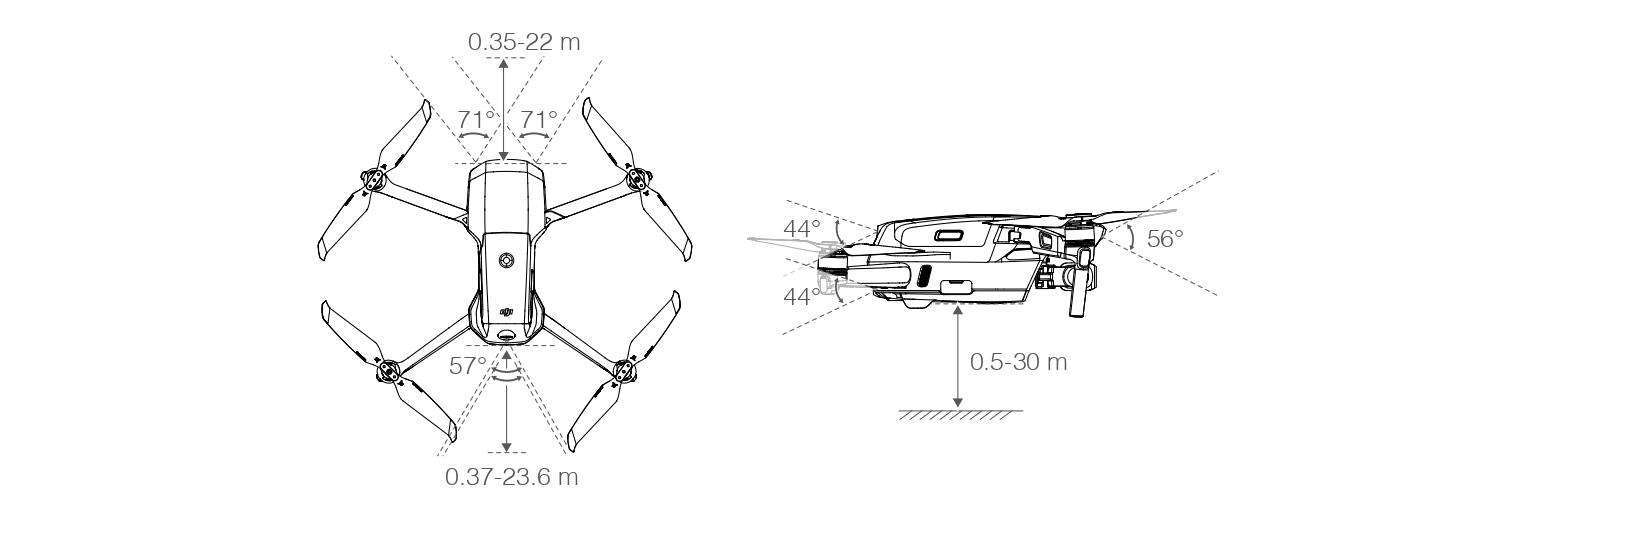 マビックエアー2 Mavicair2 の説明書 準備から飛行と撮影 スラックラインの歩き方